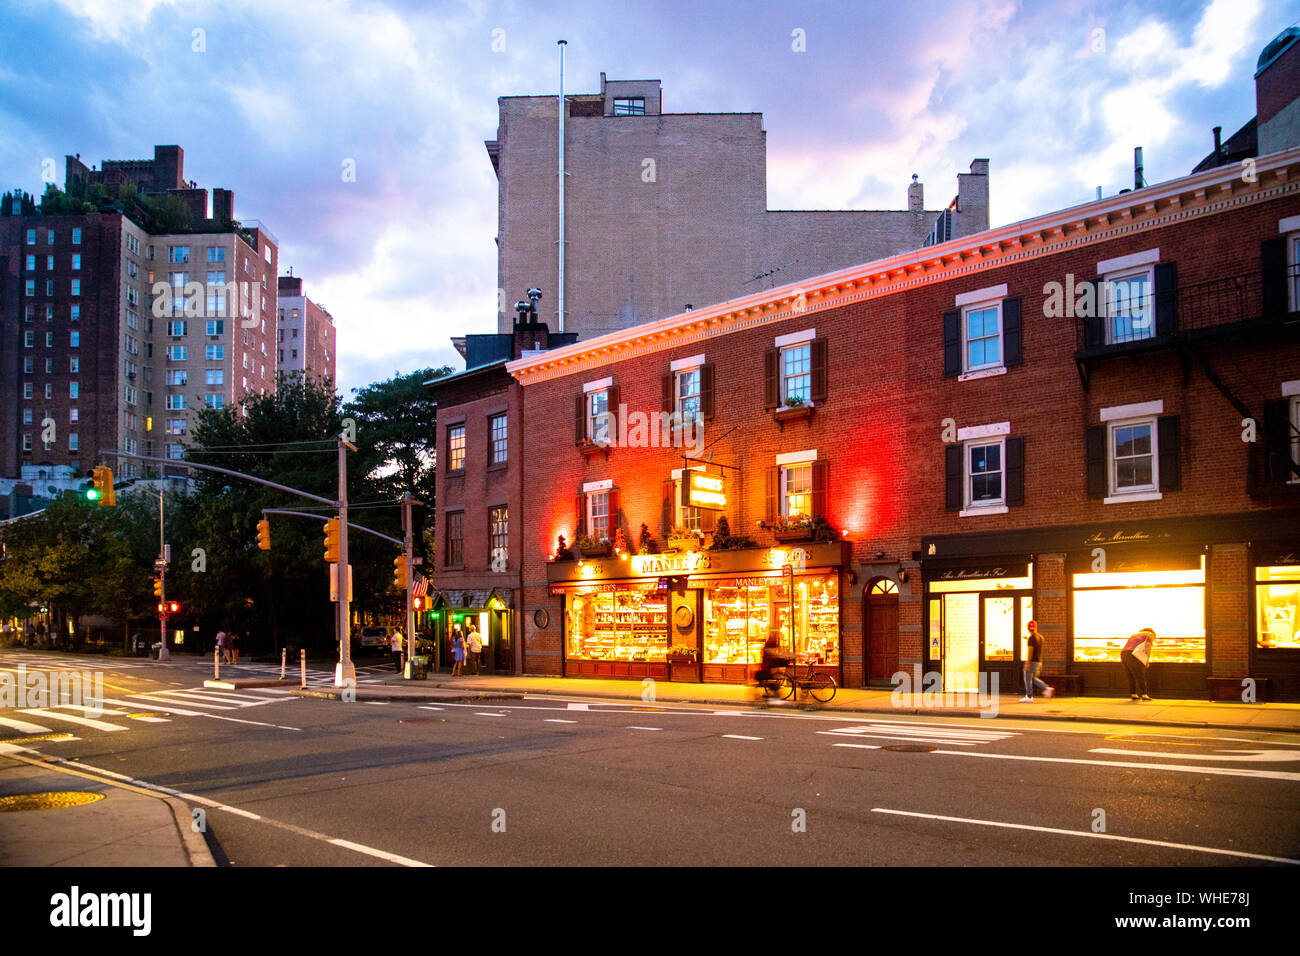 NEW YORK - 24 août 2019 : scène de rue avec les magasins, les lumières, les gens et les voitures, de nuit vu de Greenwich Village, Village de l'ouest de Manhattan. Banque D'Images